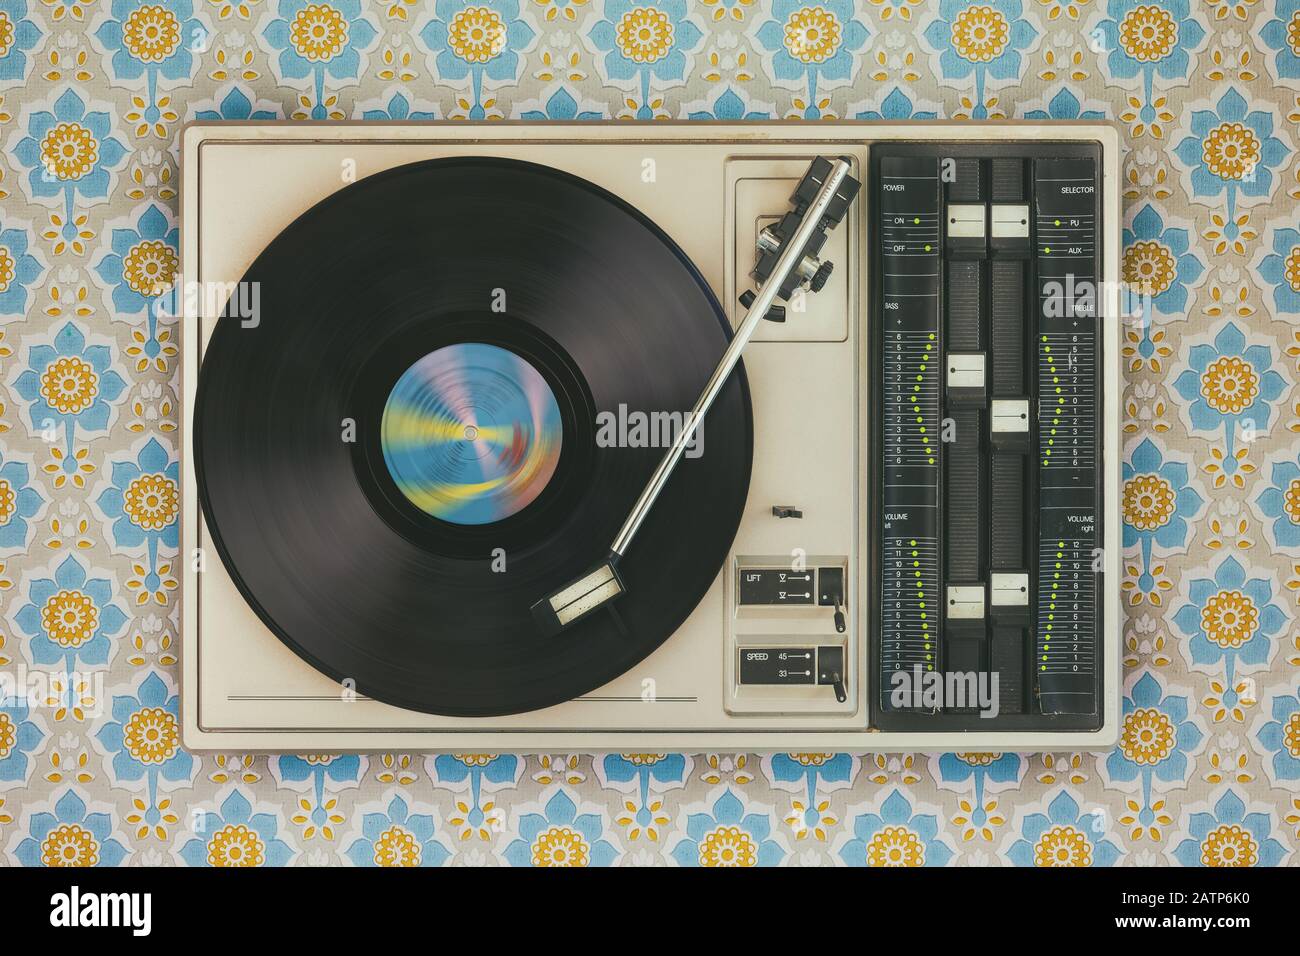 Imagen de estilo retro de un viejo reproductor de discos en la parte superior del fondo de pantalla de flores Foto de stock